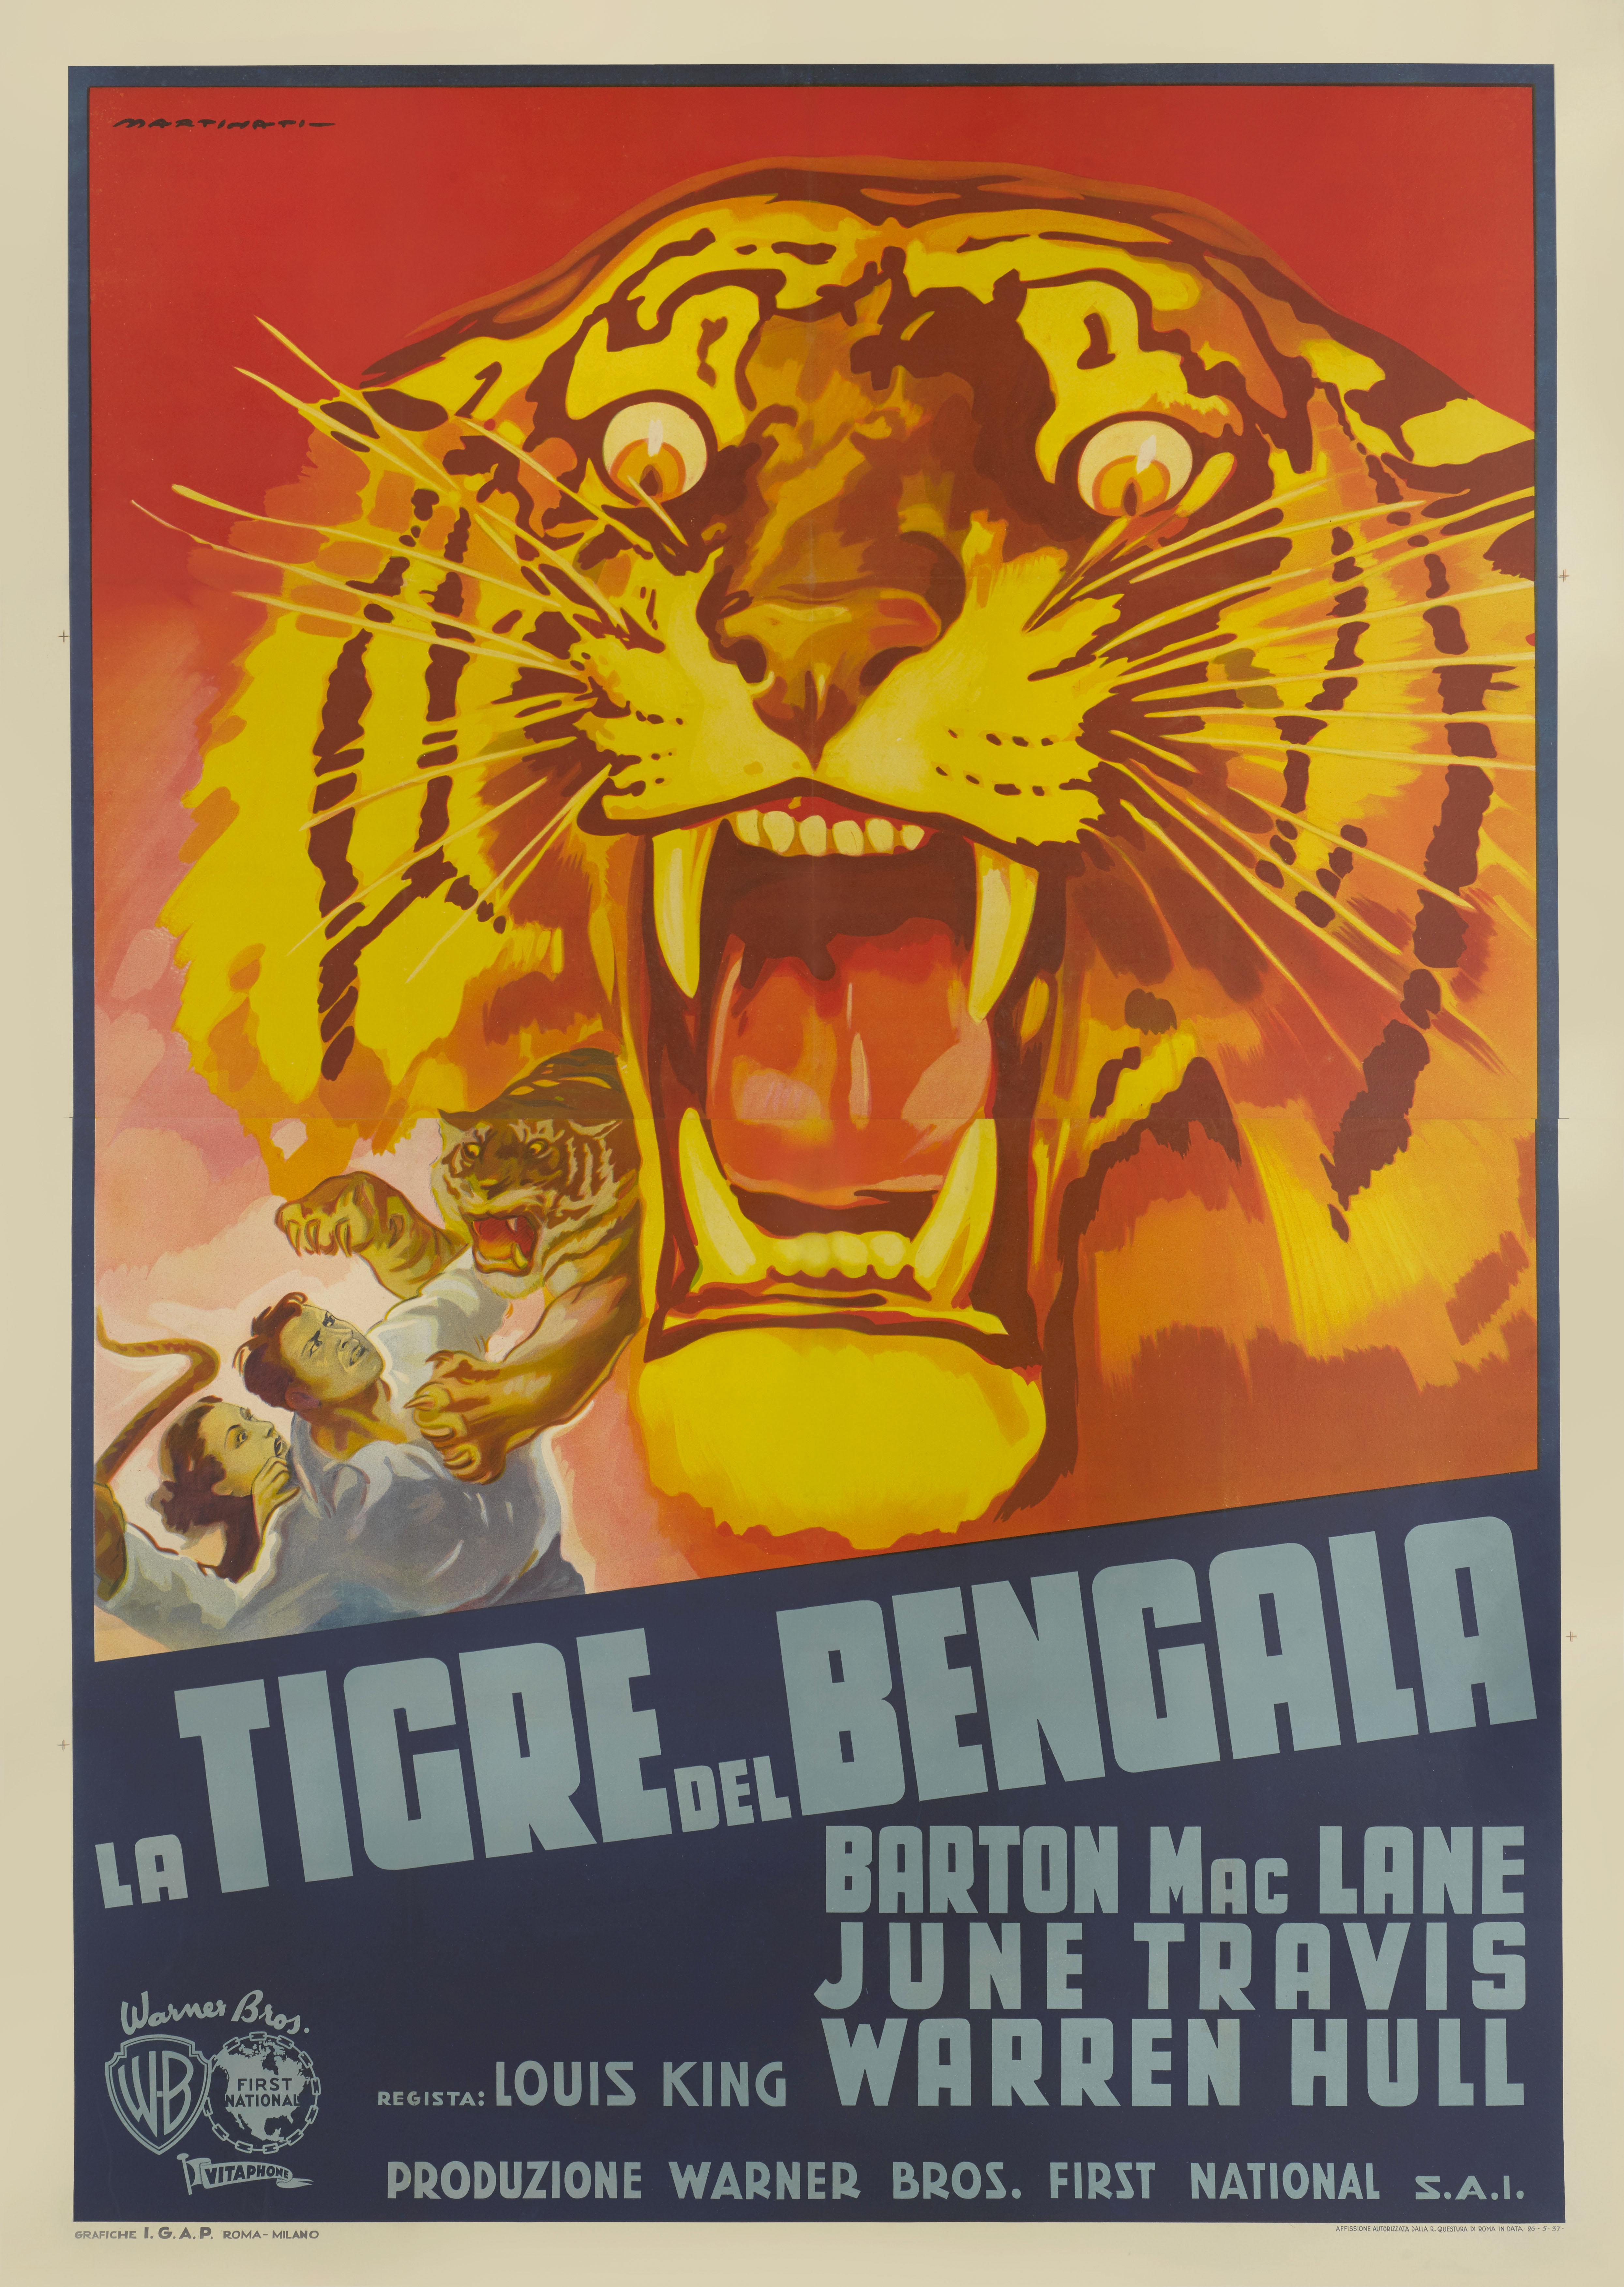 Originales italienisches Filmplakat für den Action-Abenteuerfilm Bengalischer Tiger von 1936.
Bei diesem Film aus dem Jahr 1936 führte Louis King Regie. Zu den Darstellern gehören Barton MacLane, June Travis und Warren Hull. Er erzählt die